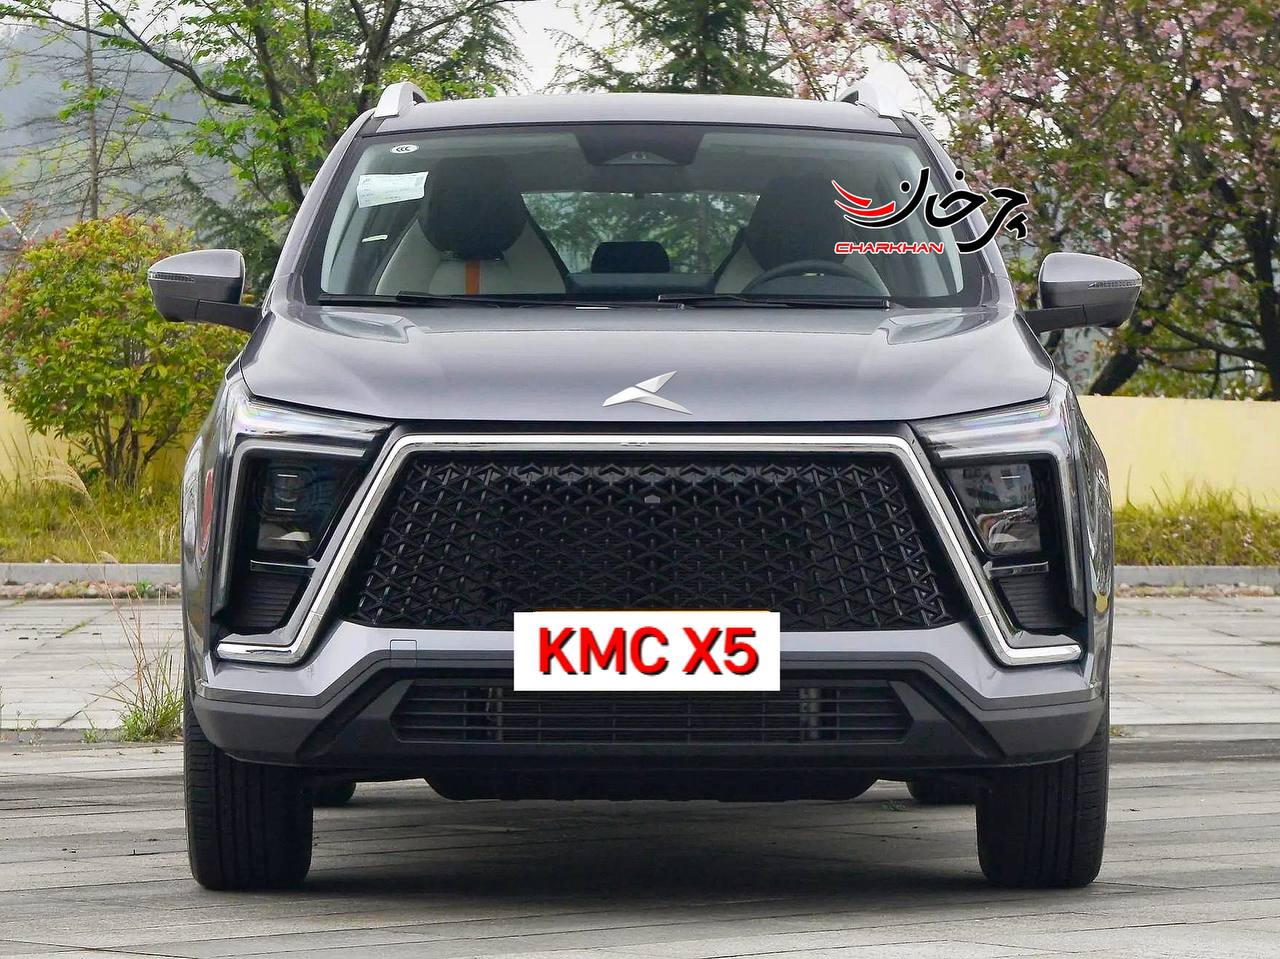 جک سهول JS5 که قرار است با نام KMC X5 کی ام سی ایکس 5 توسط کرمان موتور وارد ایران شود. فیس لیفت جک S5 را با نام KMC X5 - کی ام سی X5